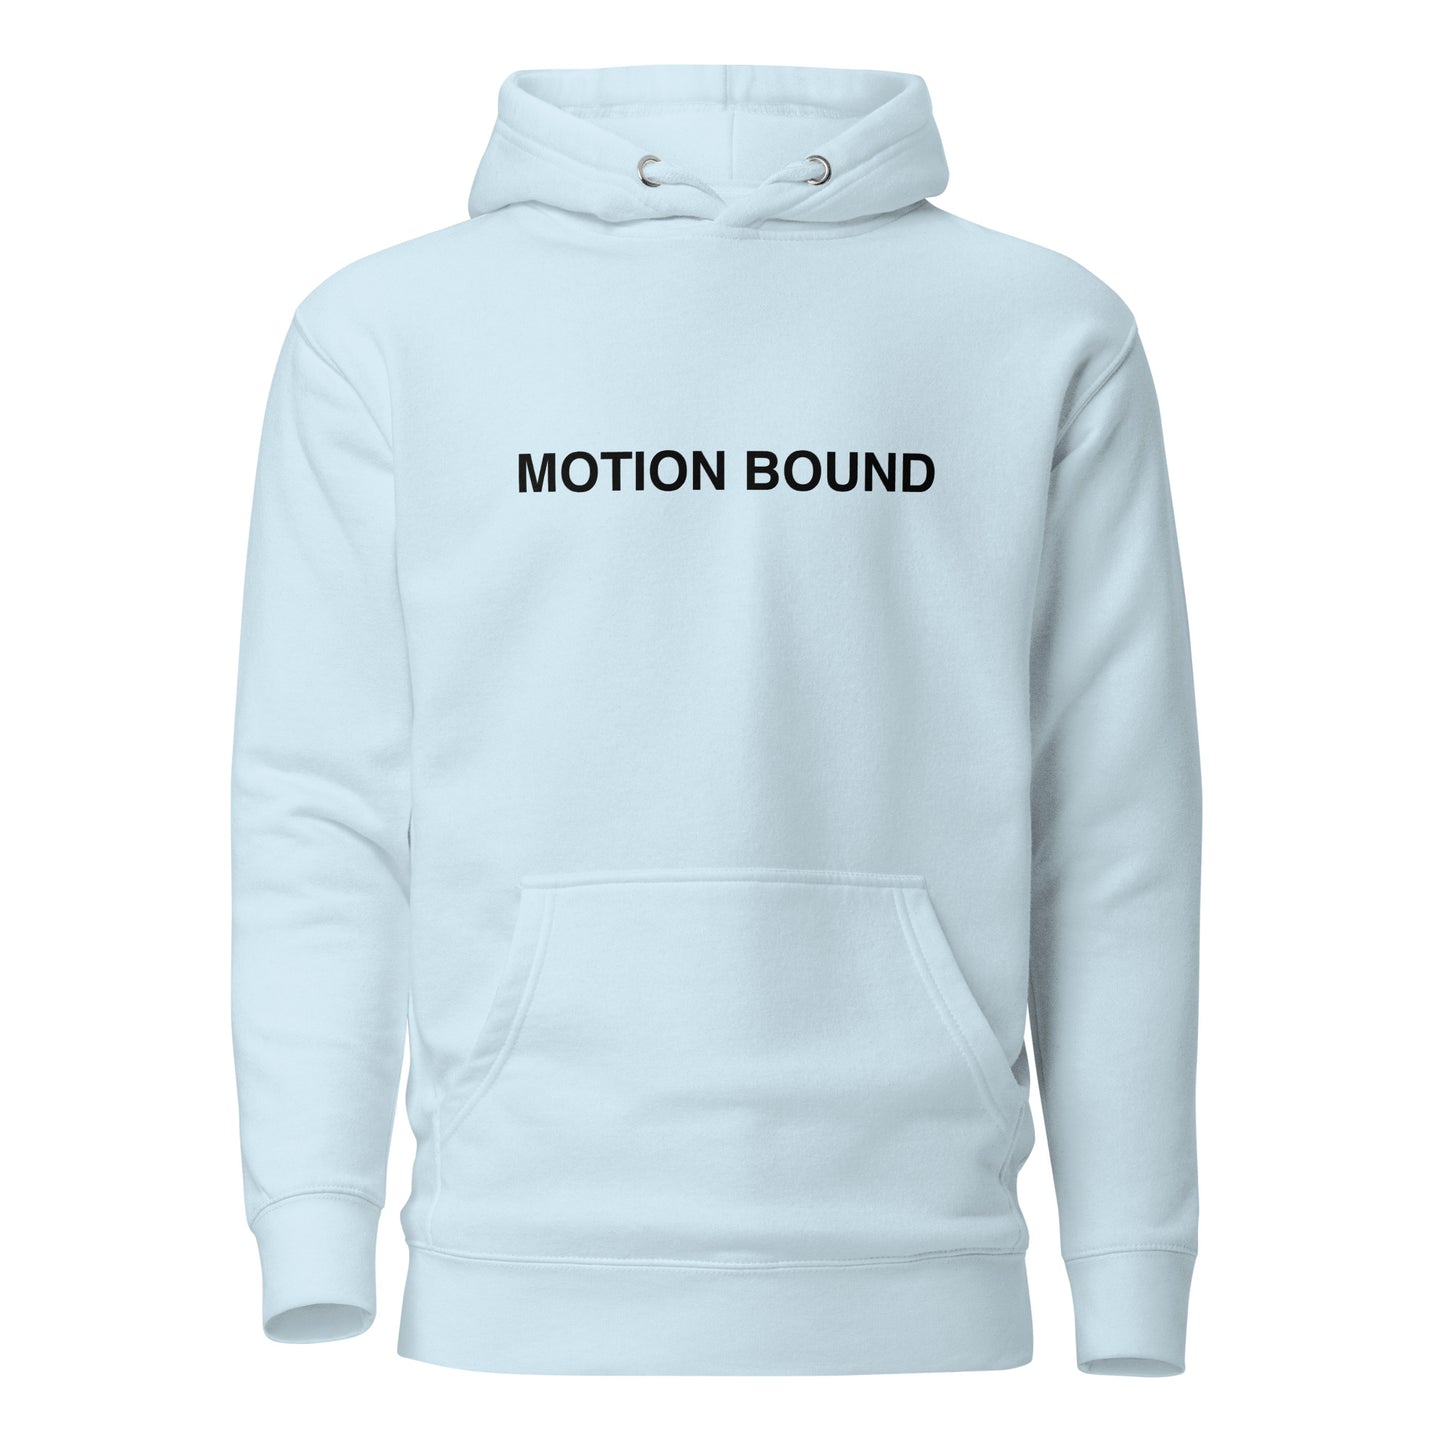 MOTION BOUND Unisex Hoodie (White, Blue, & Grey)